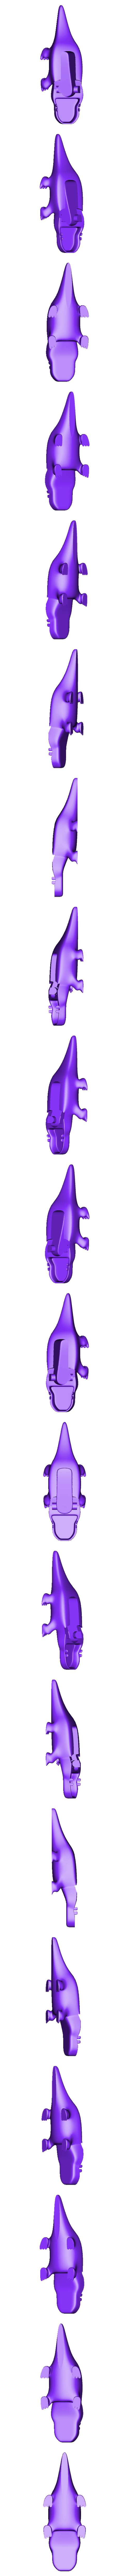 Body.stl Download STL file Kroko • 3D printing design, Bazaya